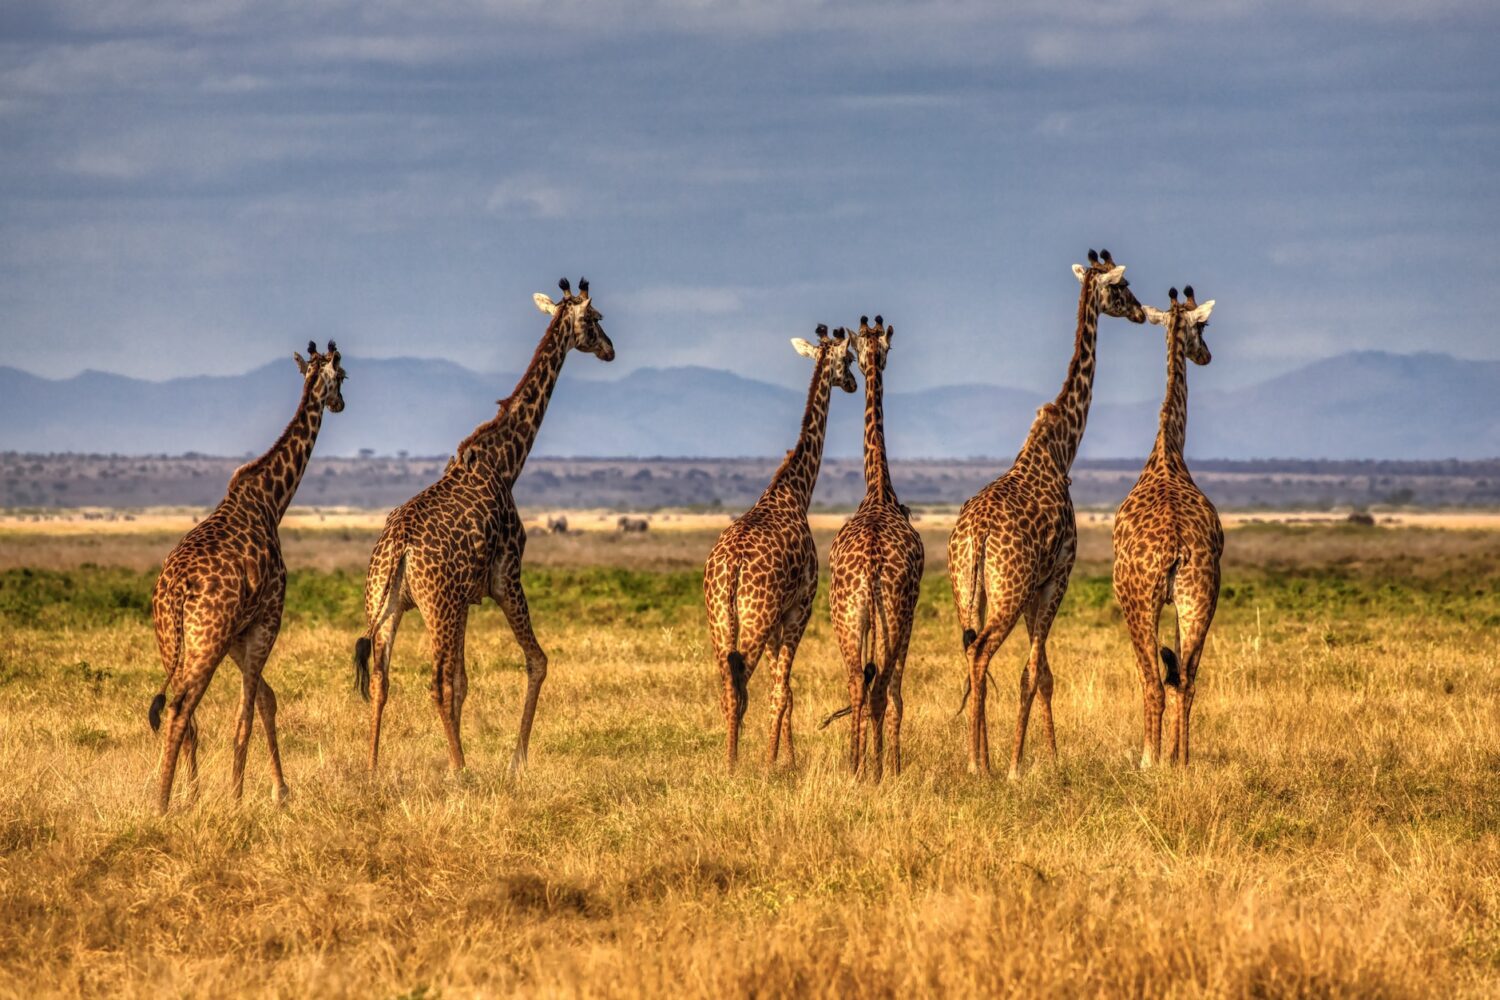 African Safari Tours